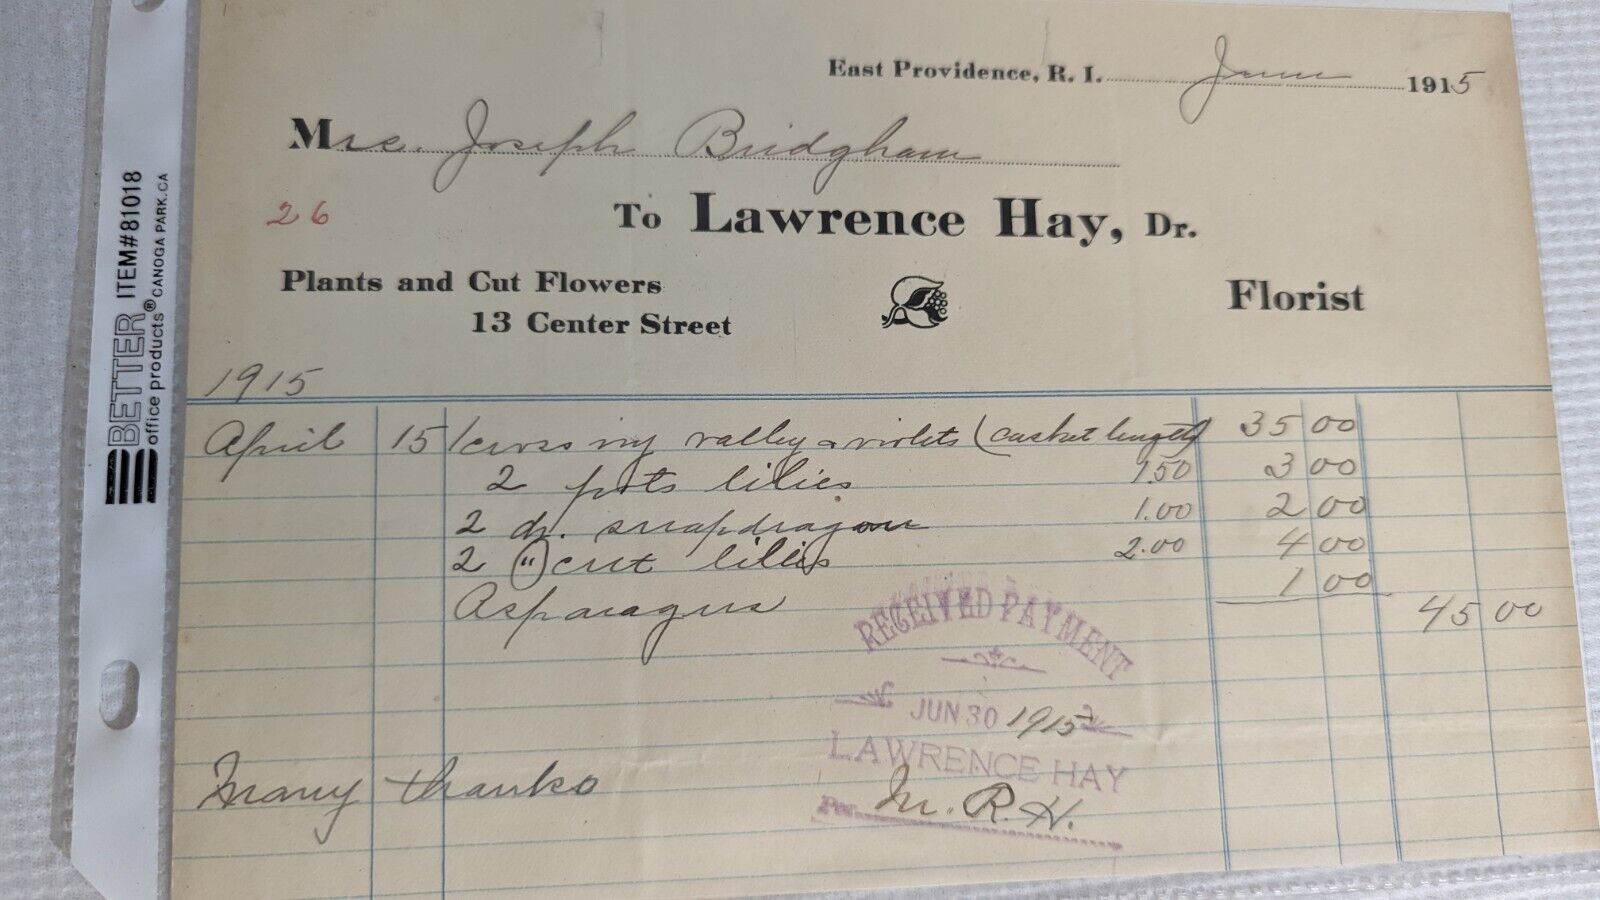 Lawrence Hay Florist Funeral Receipt Violets 1915 Vintage East Providence R.I.